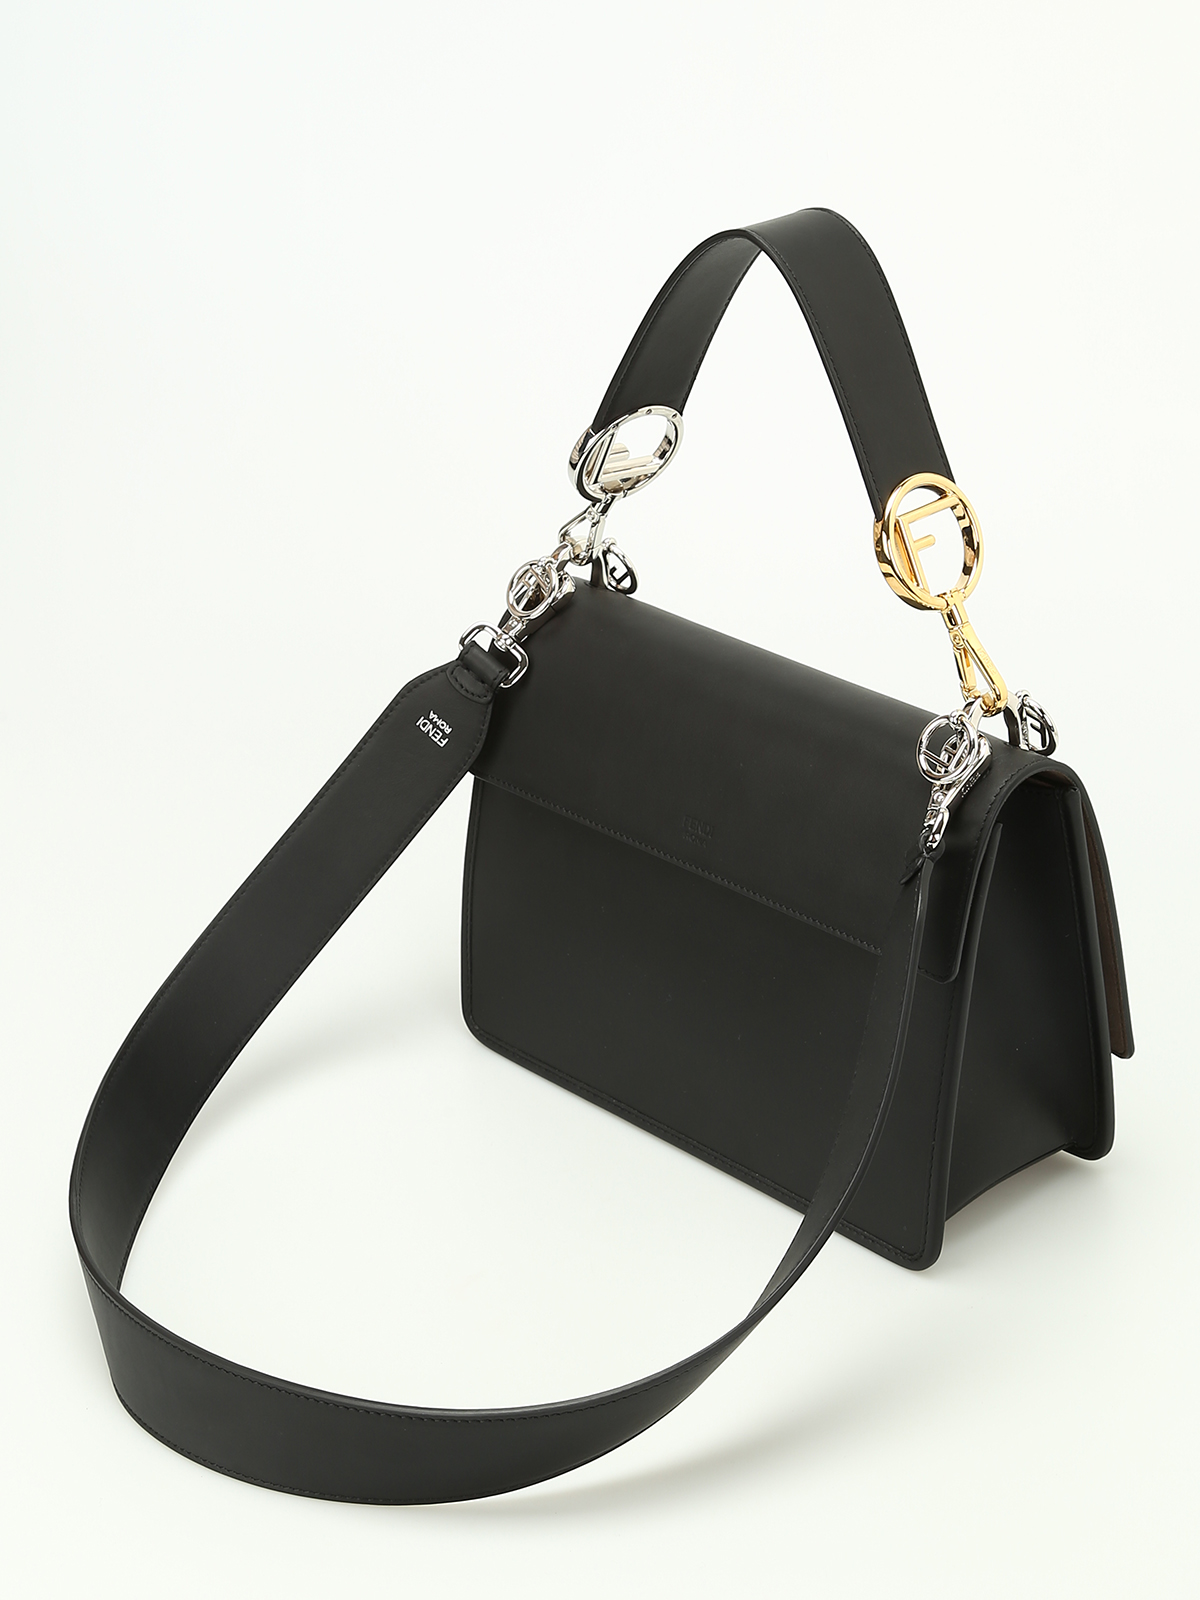 Shoulder bags Fendi - Kan black leather shoulder bag - 8BT2842IHF0GXN